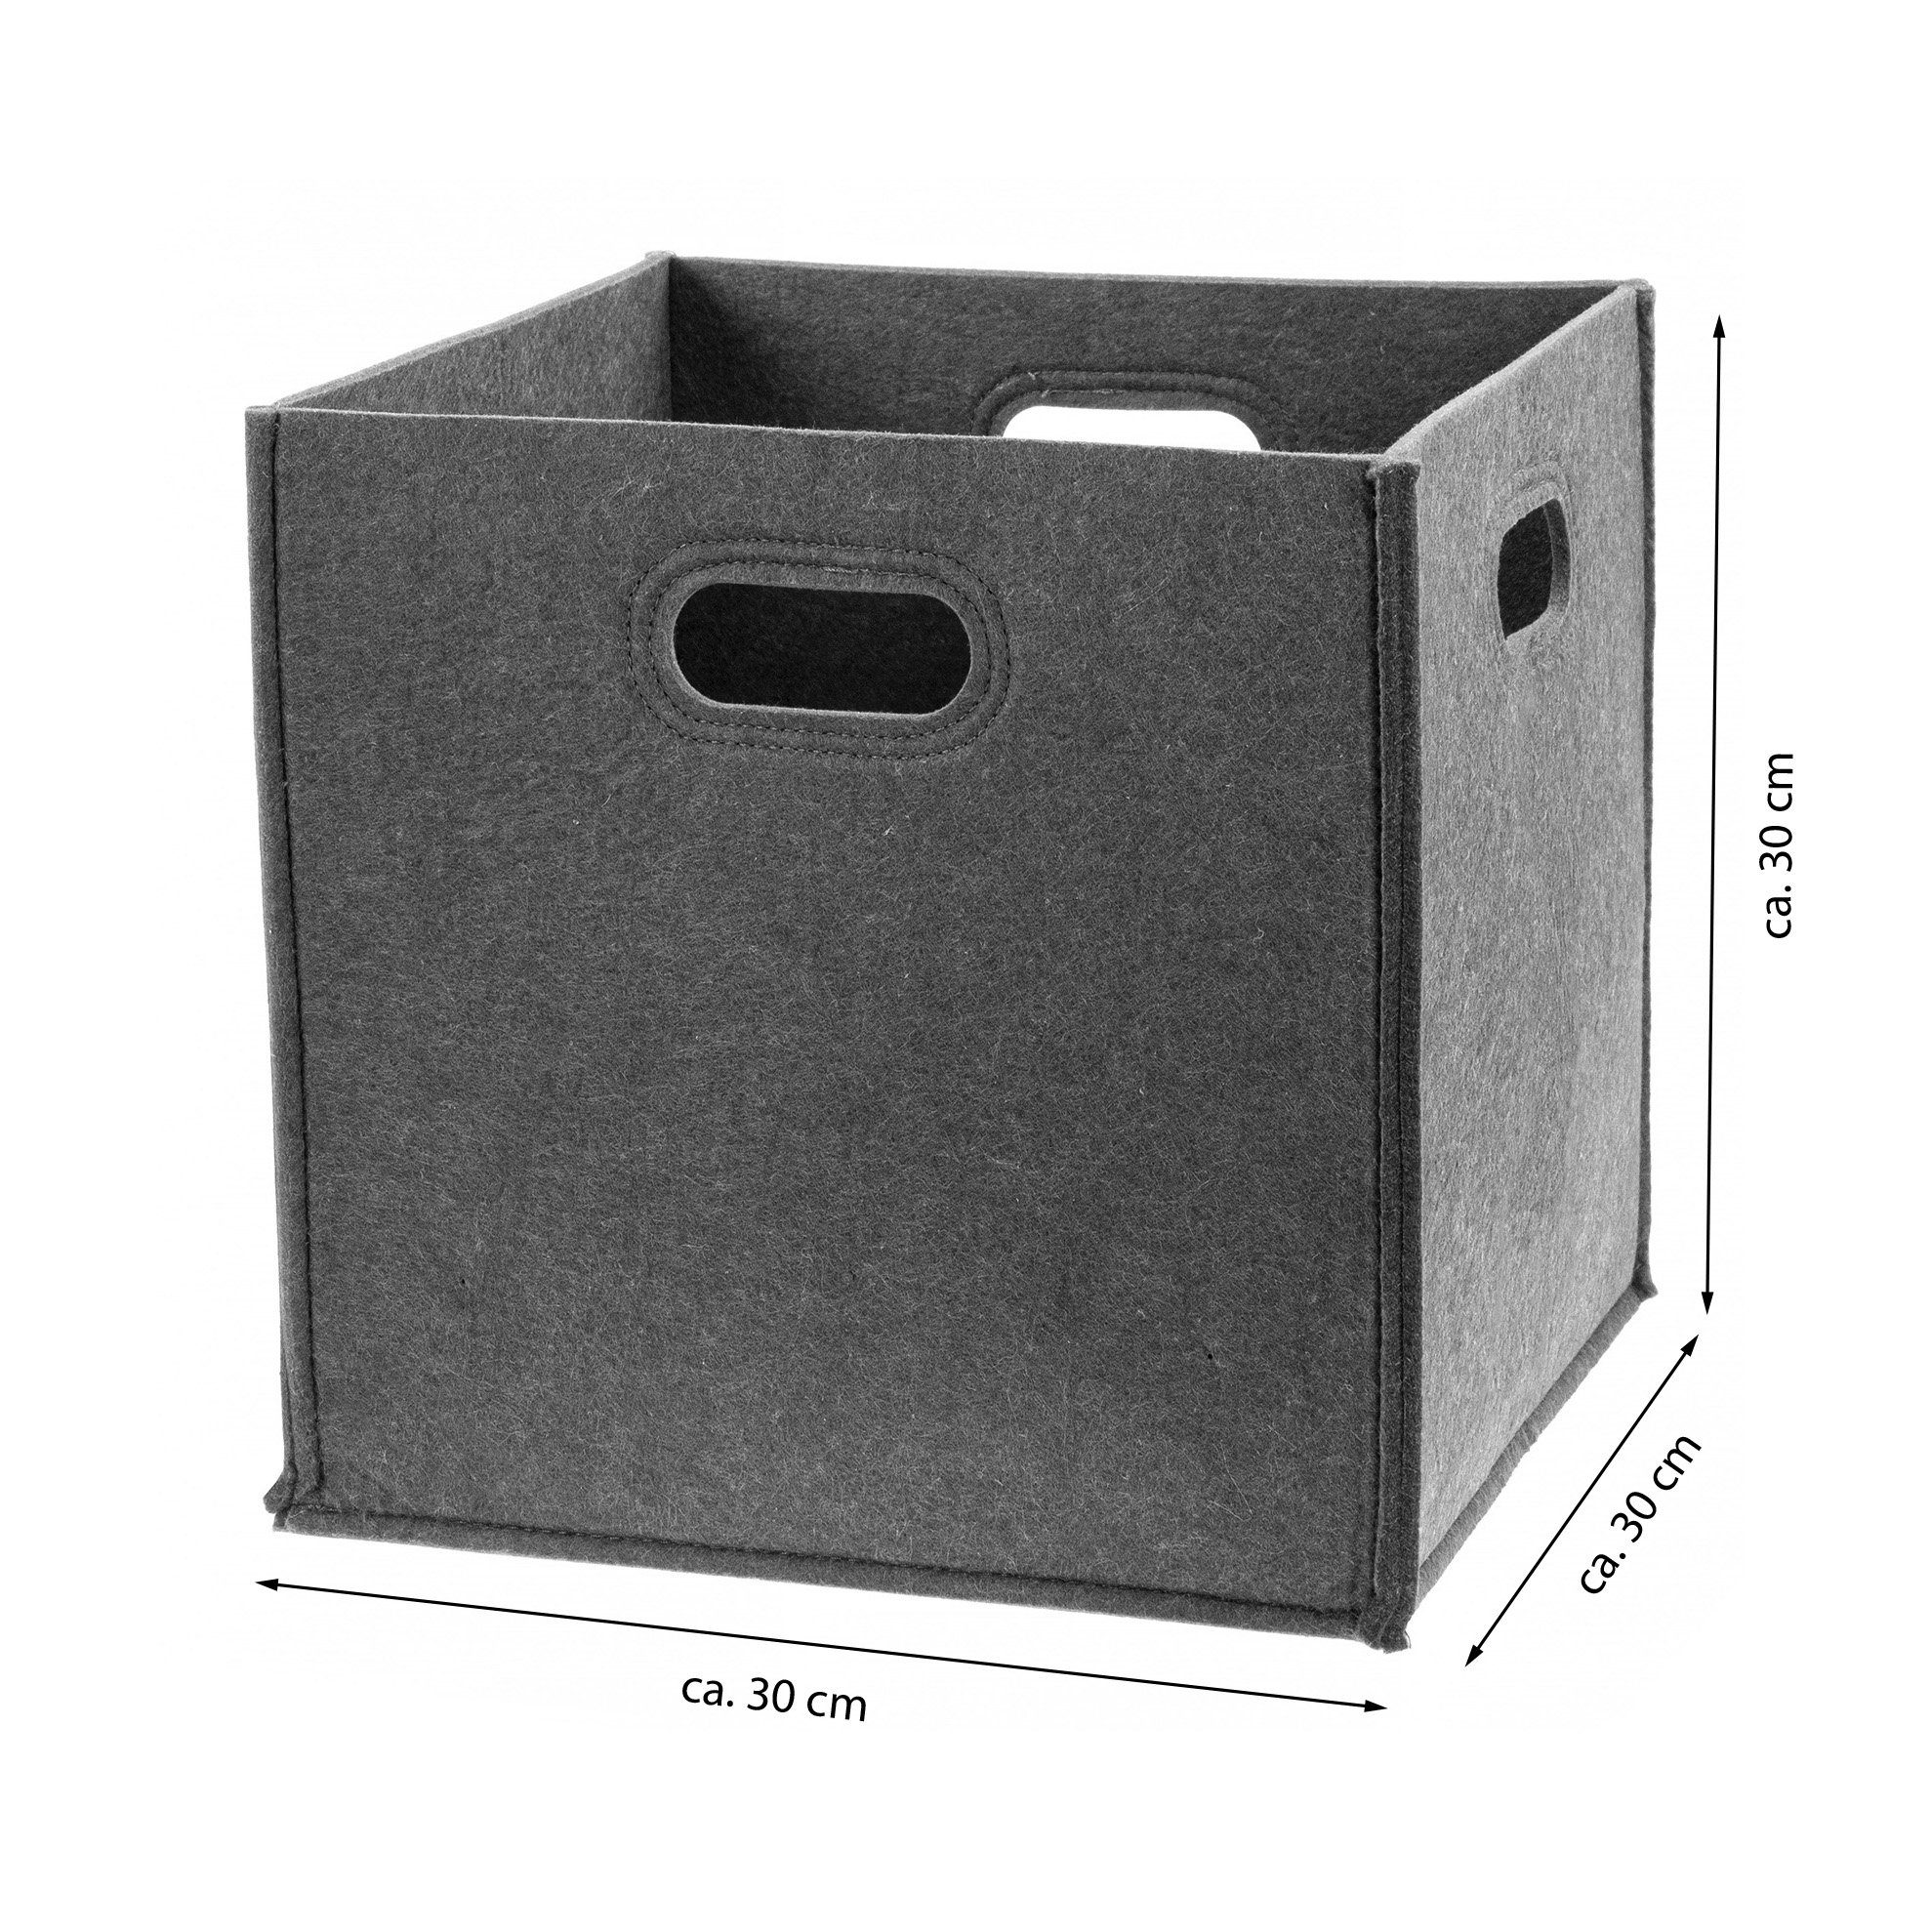 Ordnungsbox mit Deckel FILZ Aufbewahrungsbox Filzkorb Kiste Schachtel 2  Farben